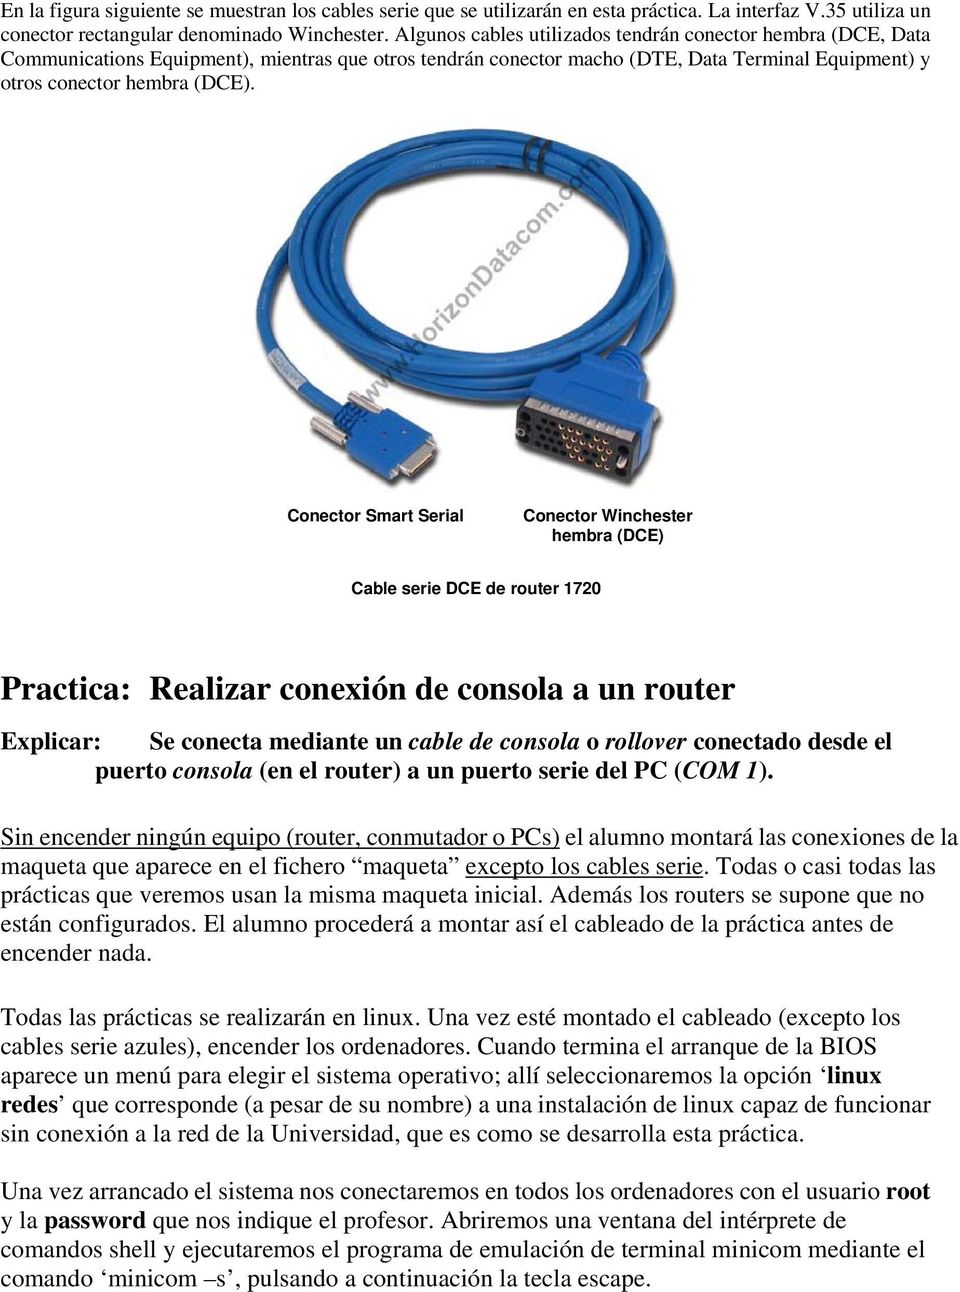 Conector Smart Serial Conector Winchester hembra (DCE) Cable serie DCE de router 1720 Practica: Realizar conexión de consola a un router Explicar: Se conecta mediante un cable de consola o rollover